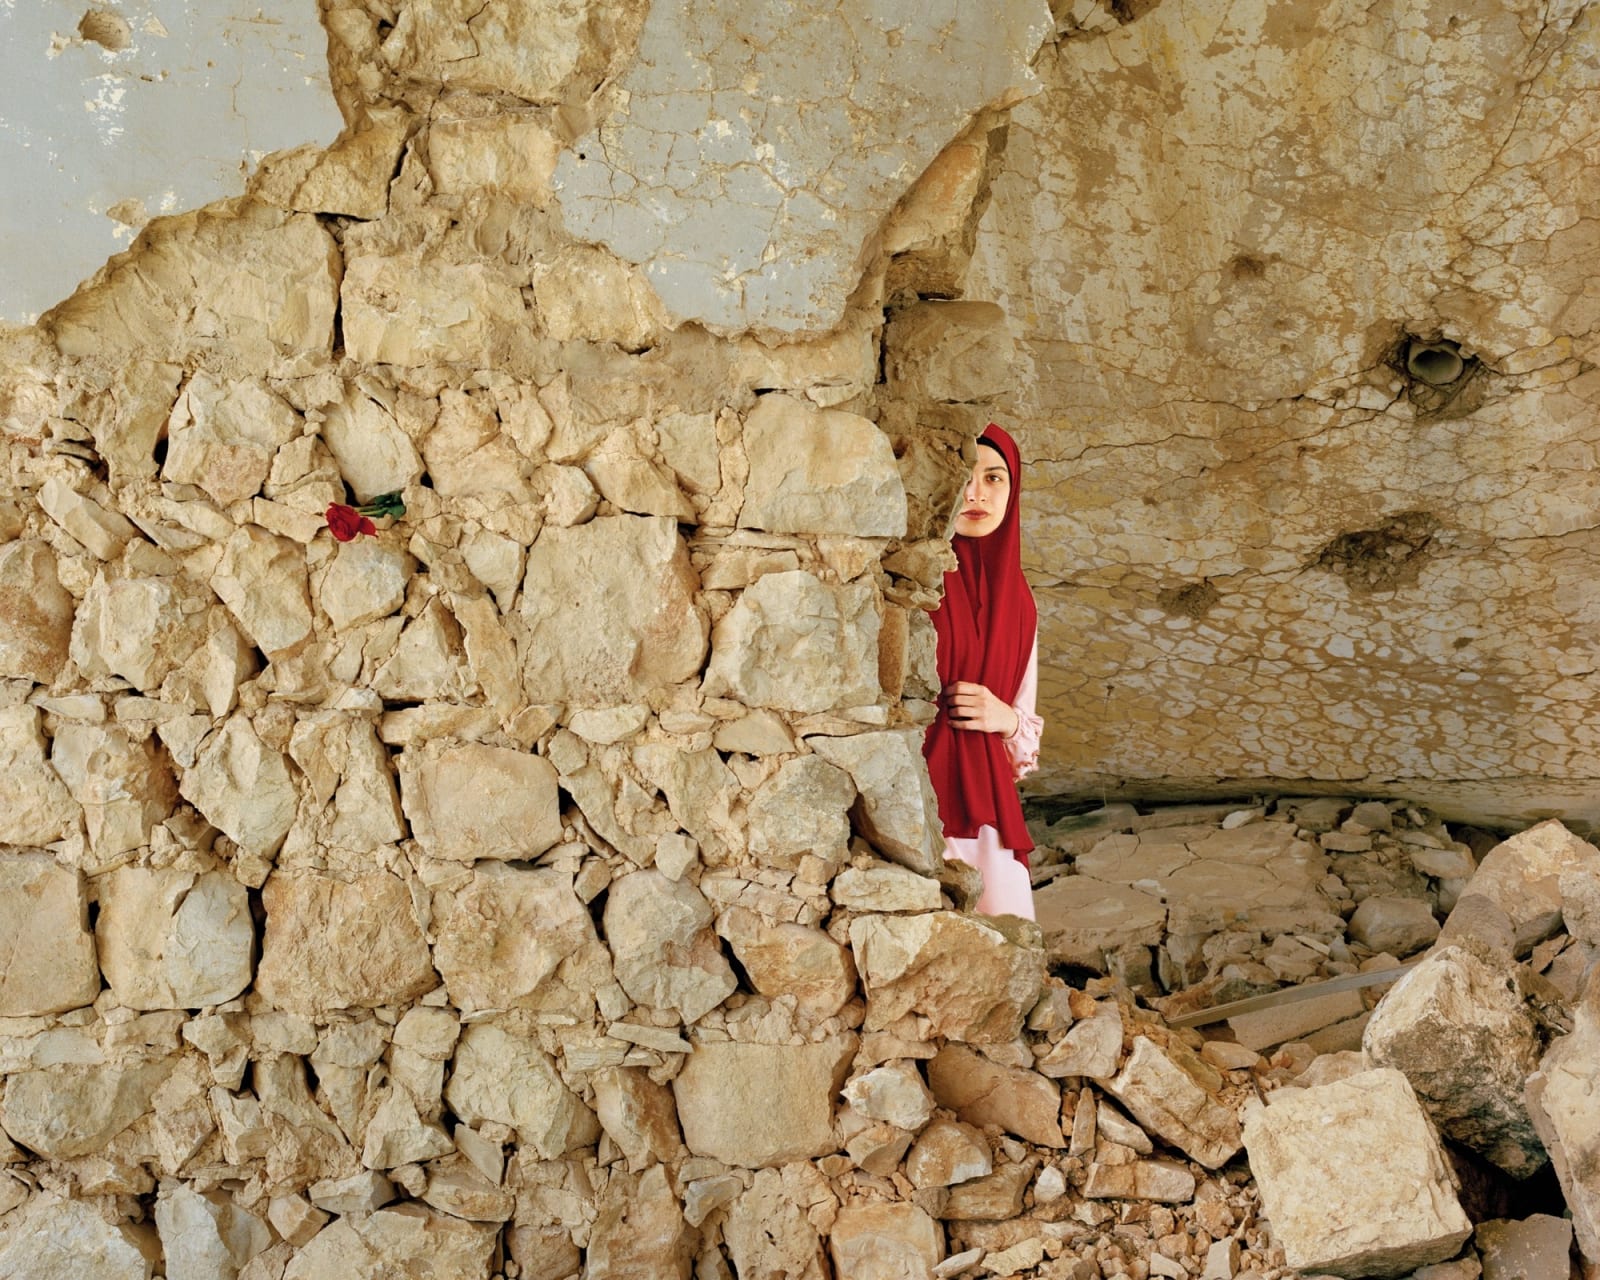 Rania Matar, Mariam, Khiyam, Lebanon, 2019